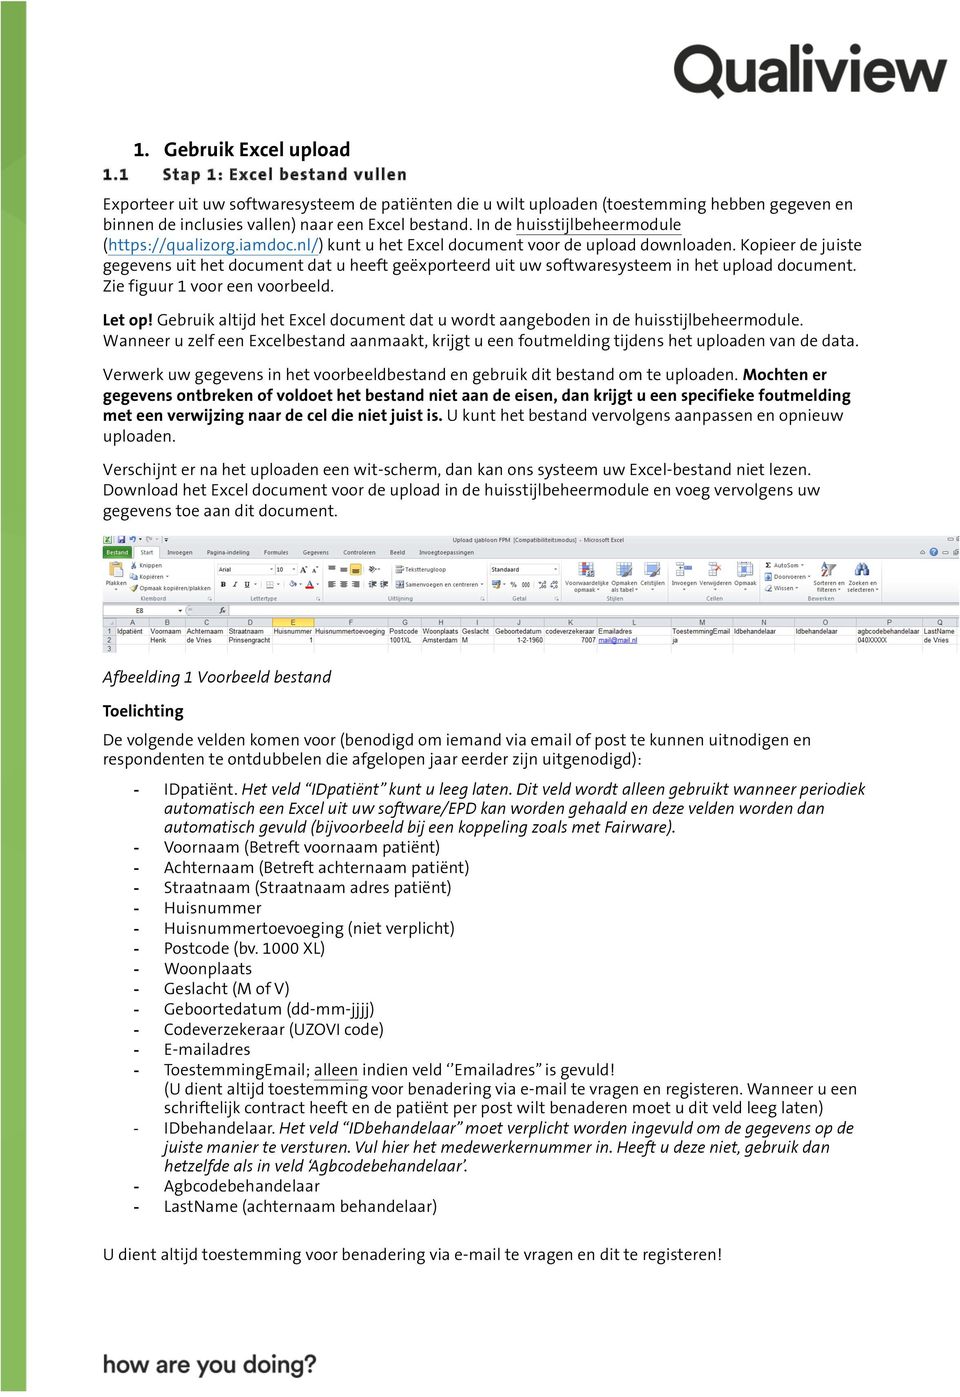 In de huisstijlbeheermodule (https://qualizorg.iamdoc.nl/) kunt u het Excel document voor de upload downloaden.